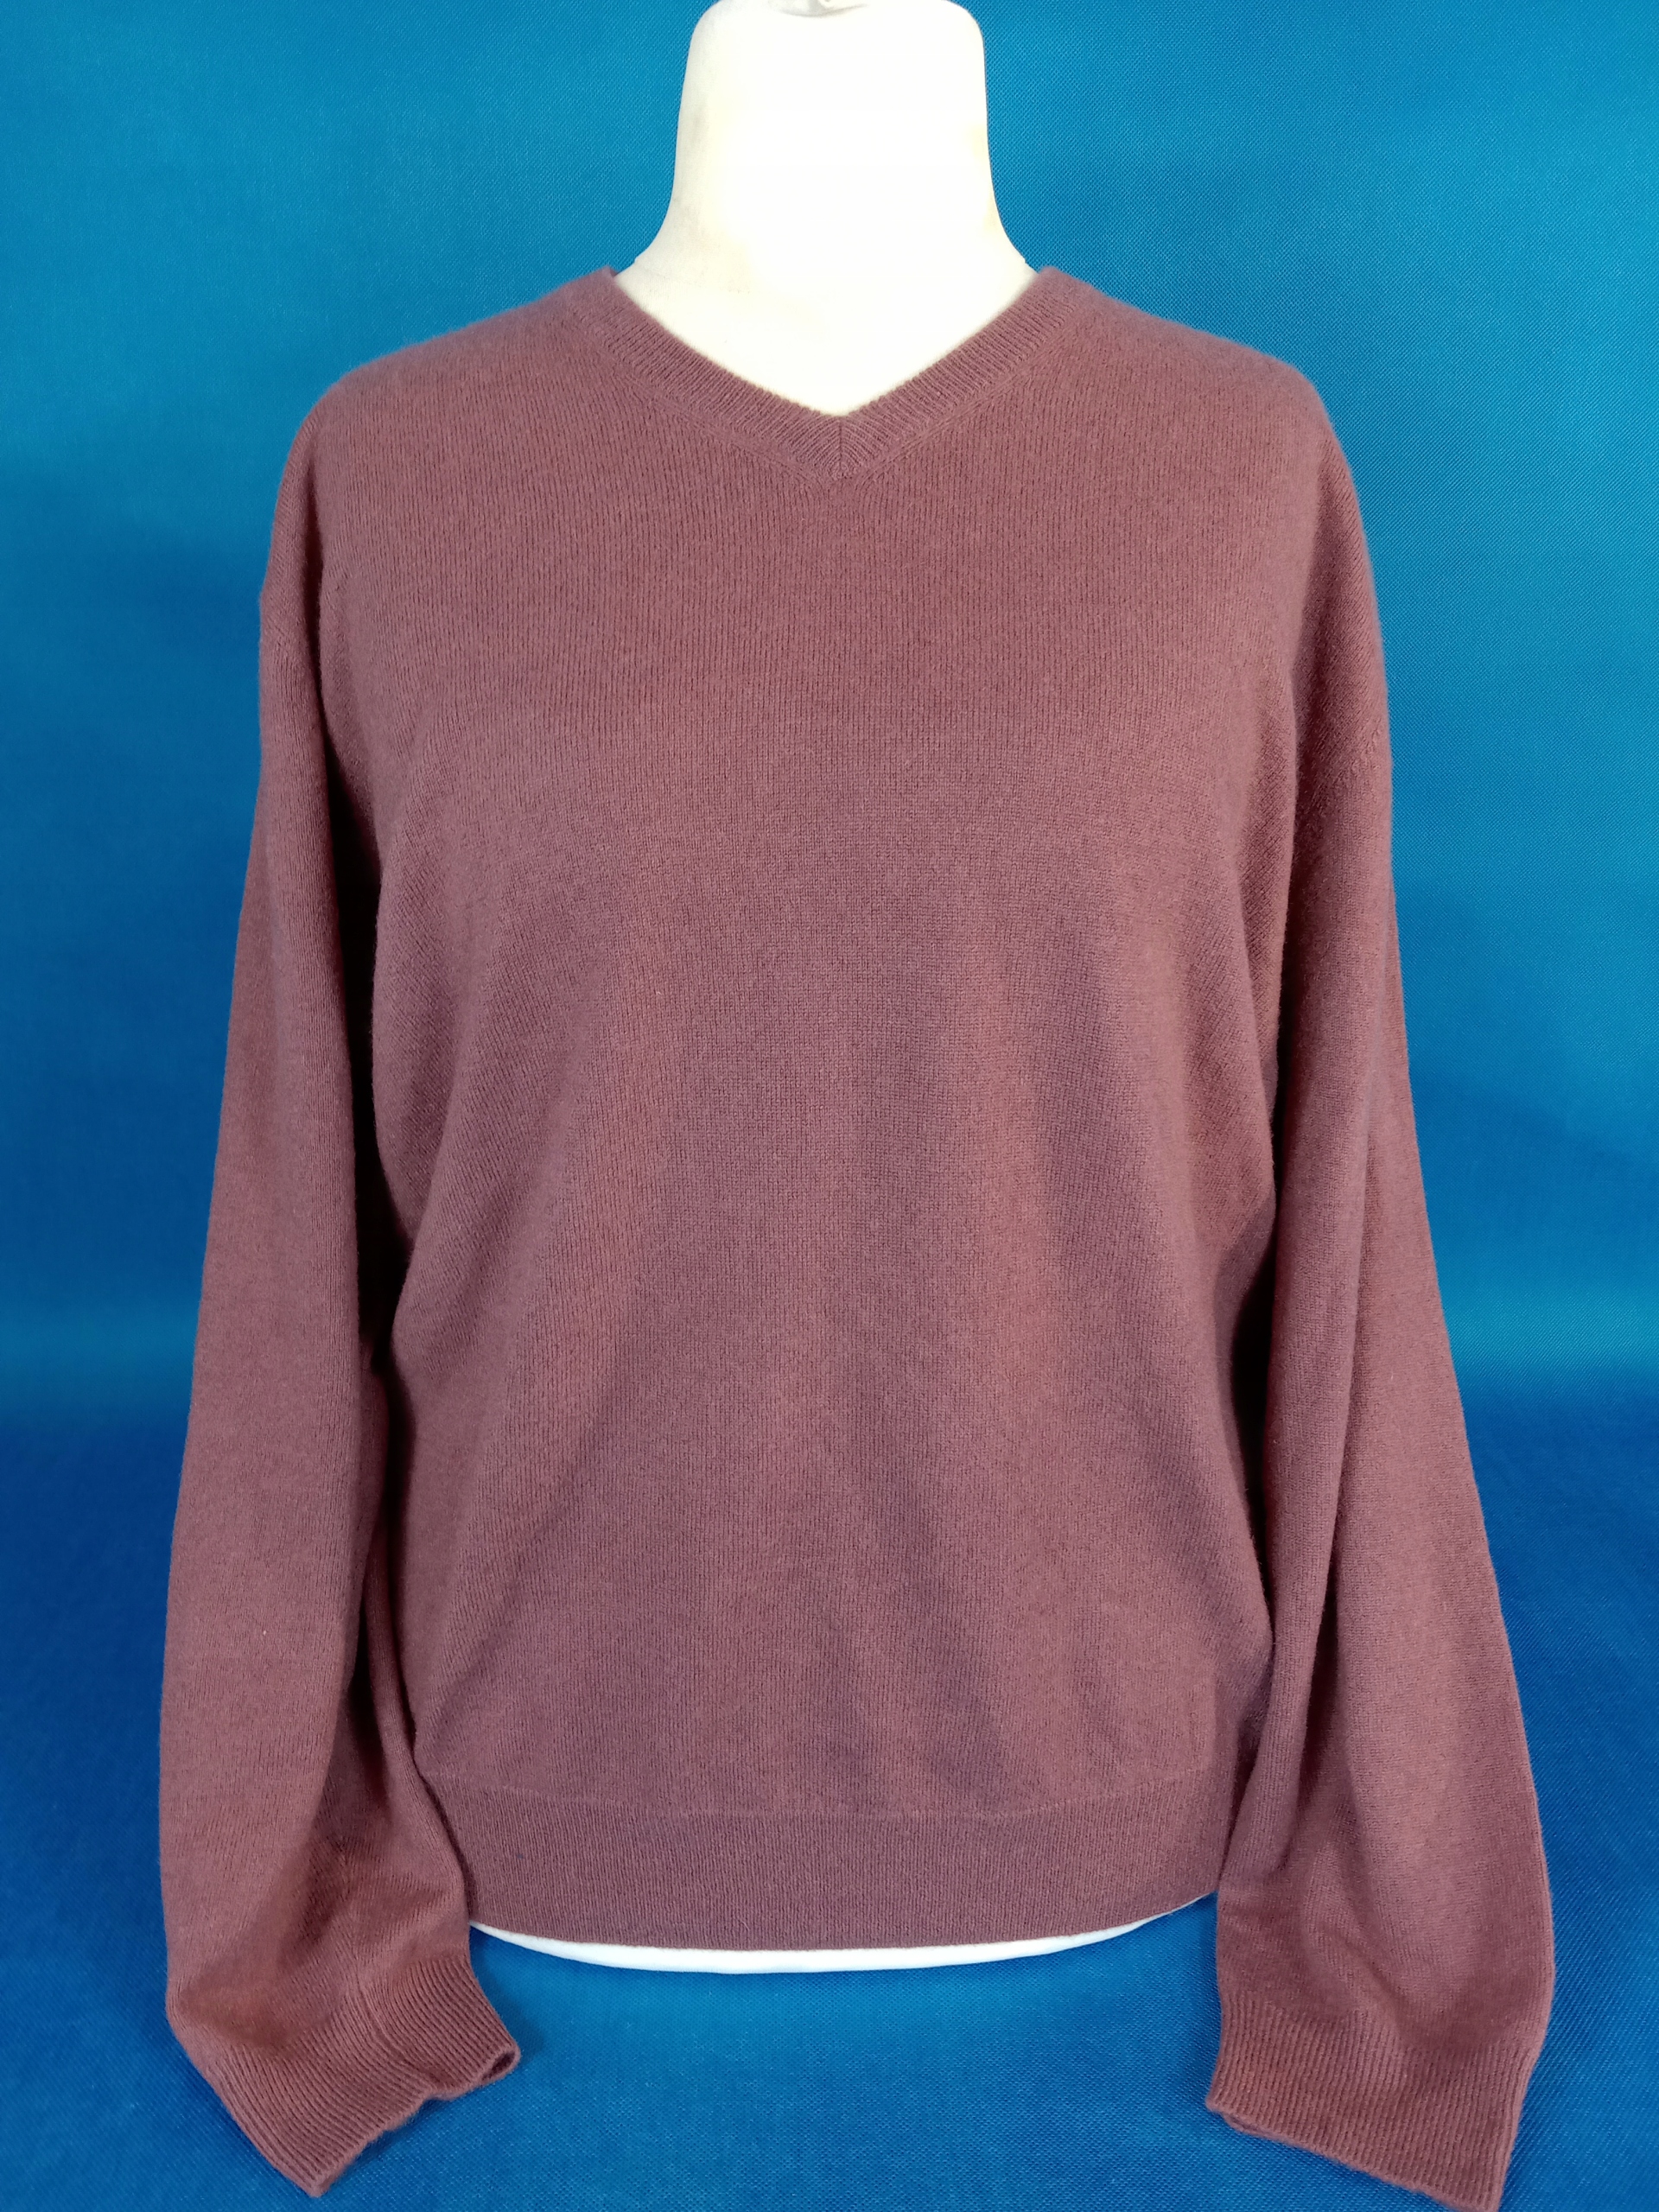 Moda Swetry Kaszmirowe swetry Charter Club Kaszmirowy sweter czerwony Warkoczowy wz\u00f3r W stylu casual 